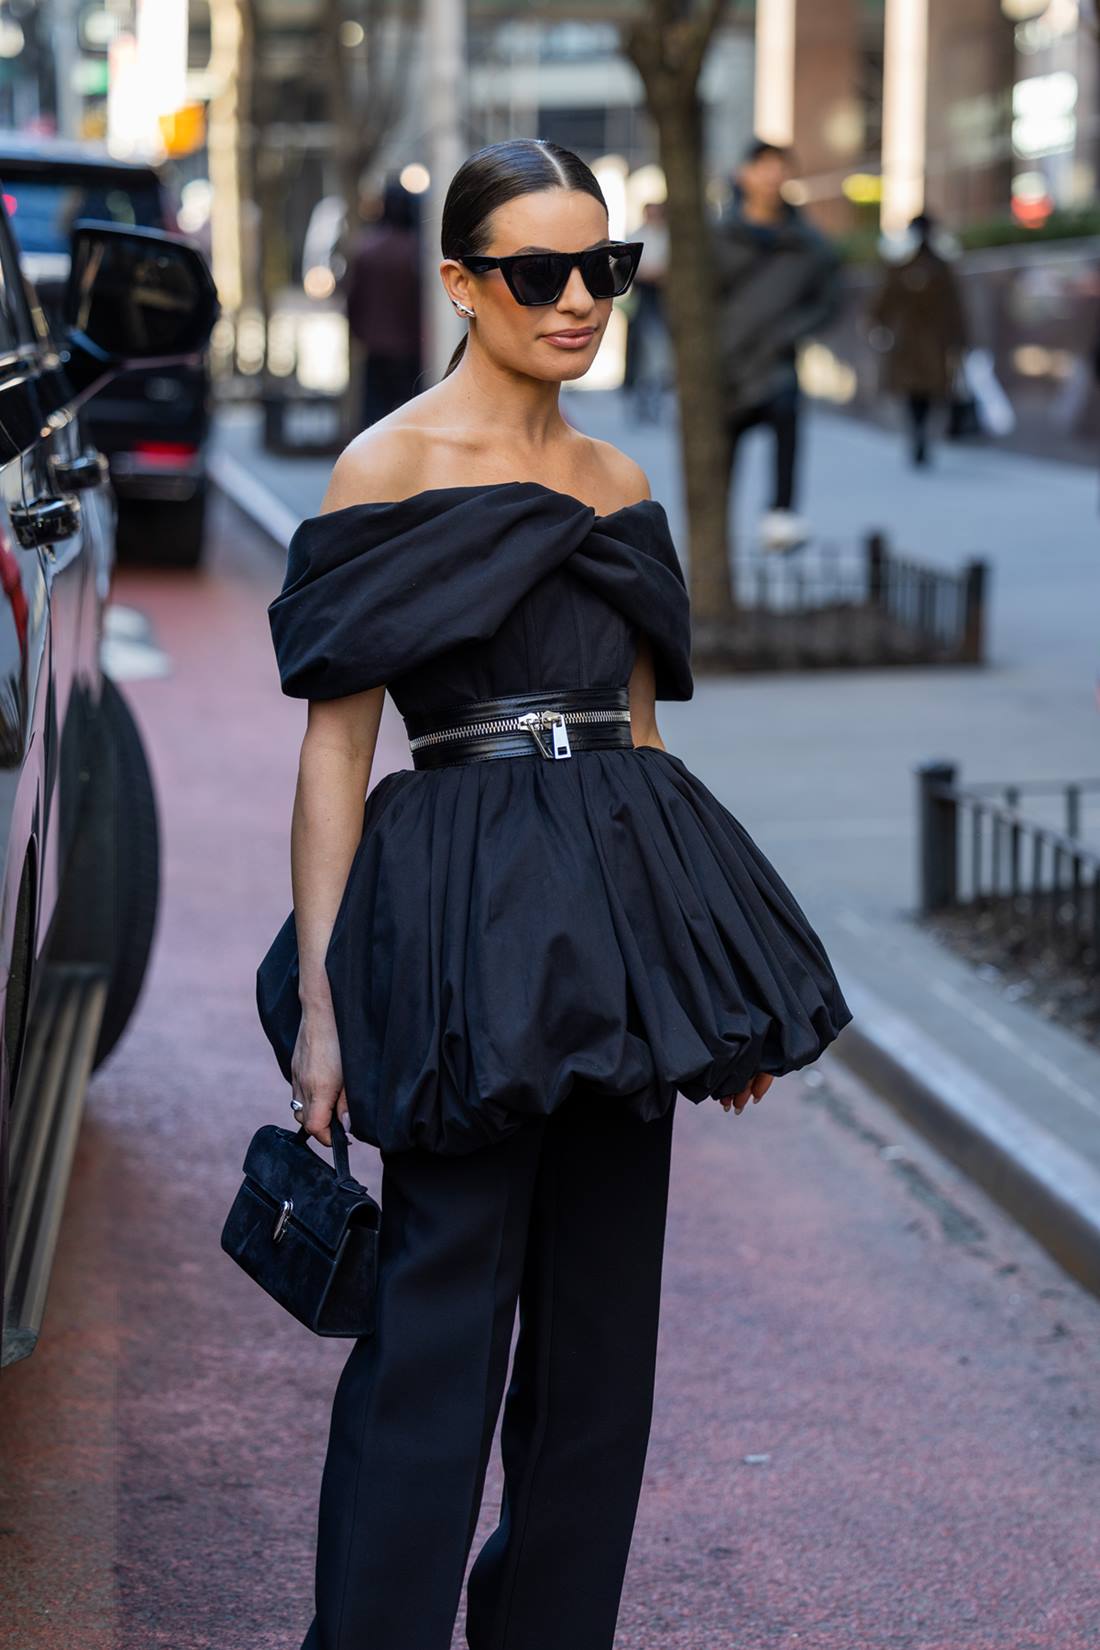 A atriz Lea Michele, uma mulher branca e jovem, com cabelo liso preto, posa para foto na rua. Ela usa um vestido curto preto e uma calça reta, também preta, além de óculos escuros. - Metrópoles